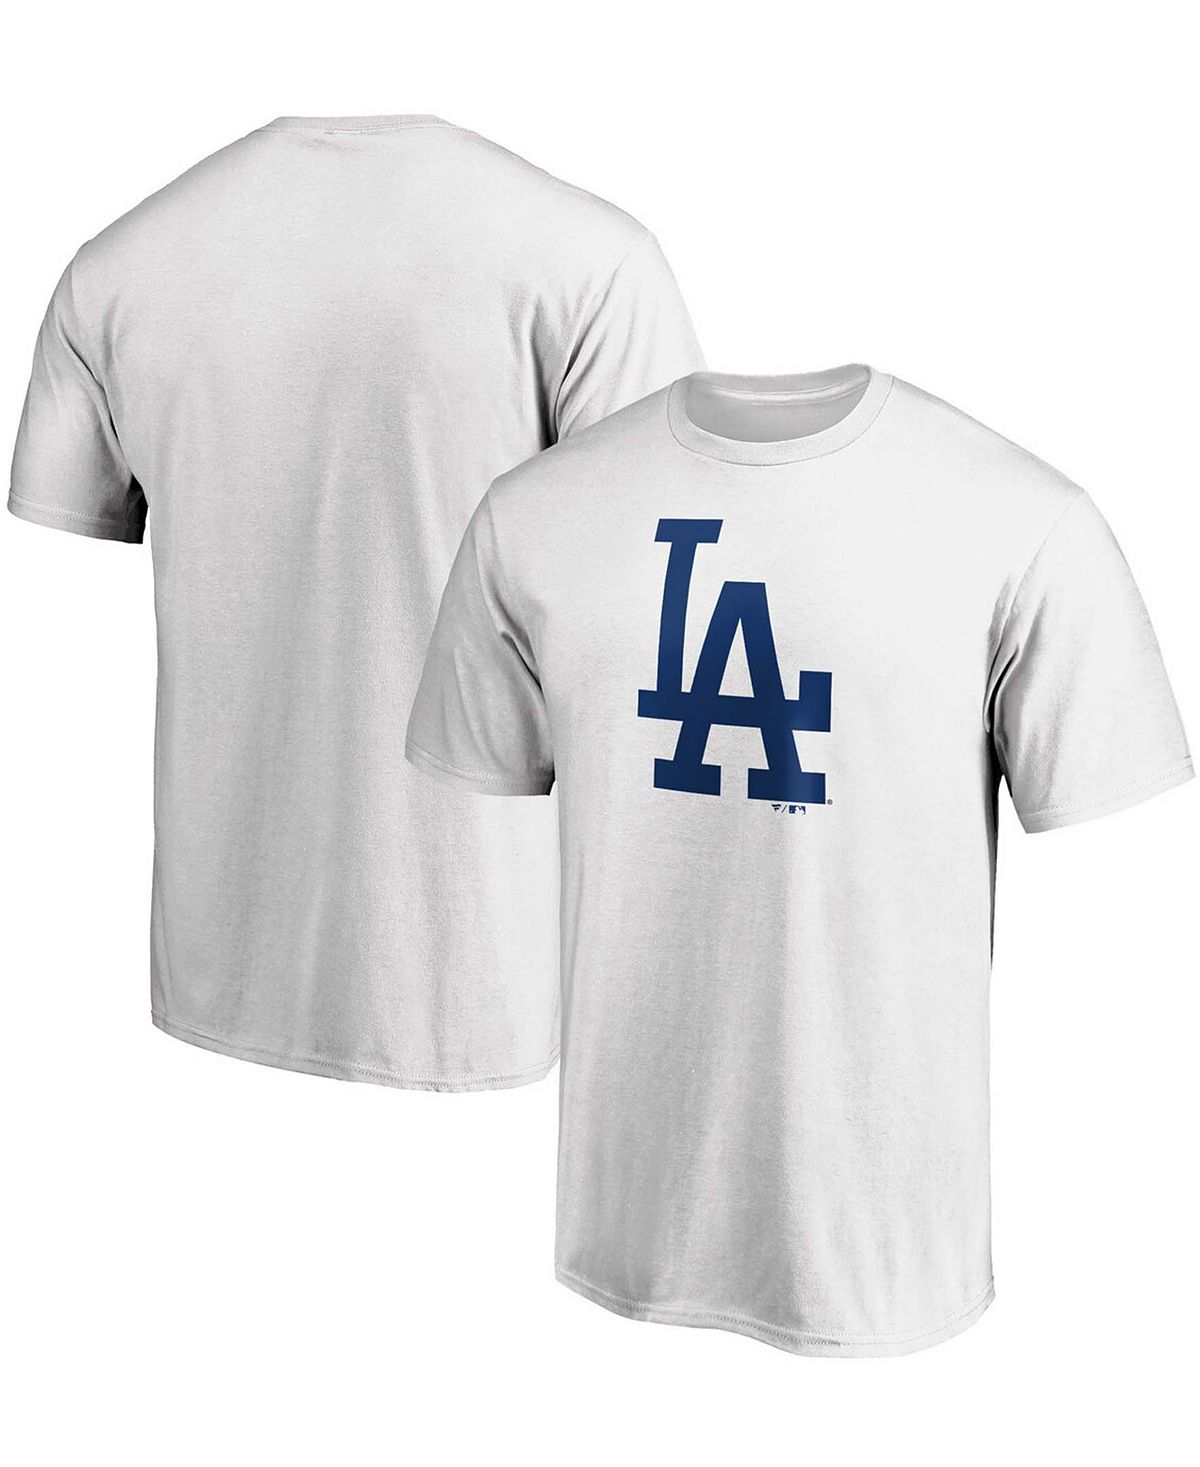 Мужская белая футболка с официальным логотипом Los Angeles Dodgers Fanatics цена и фото